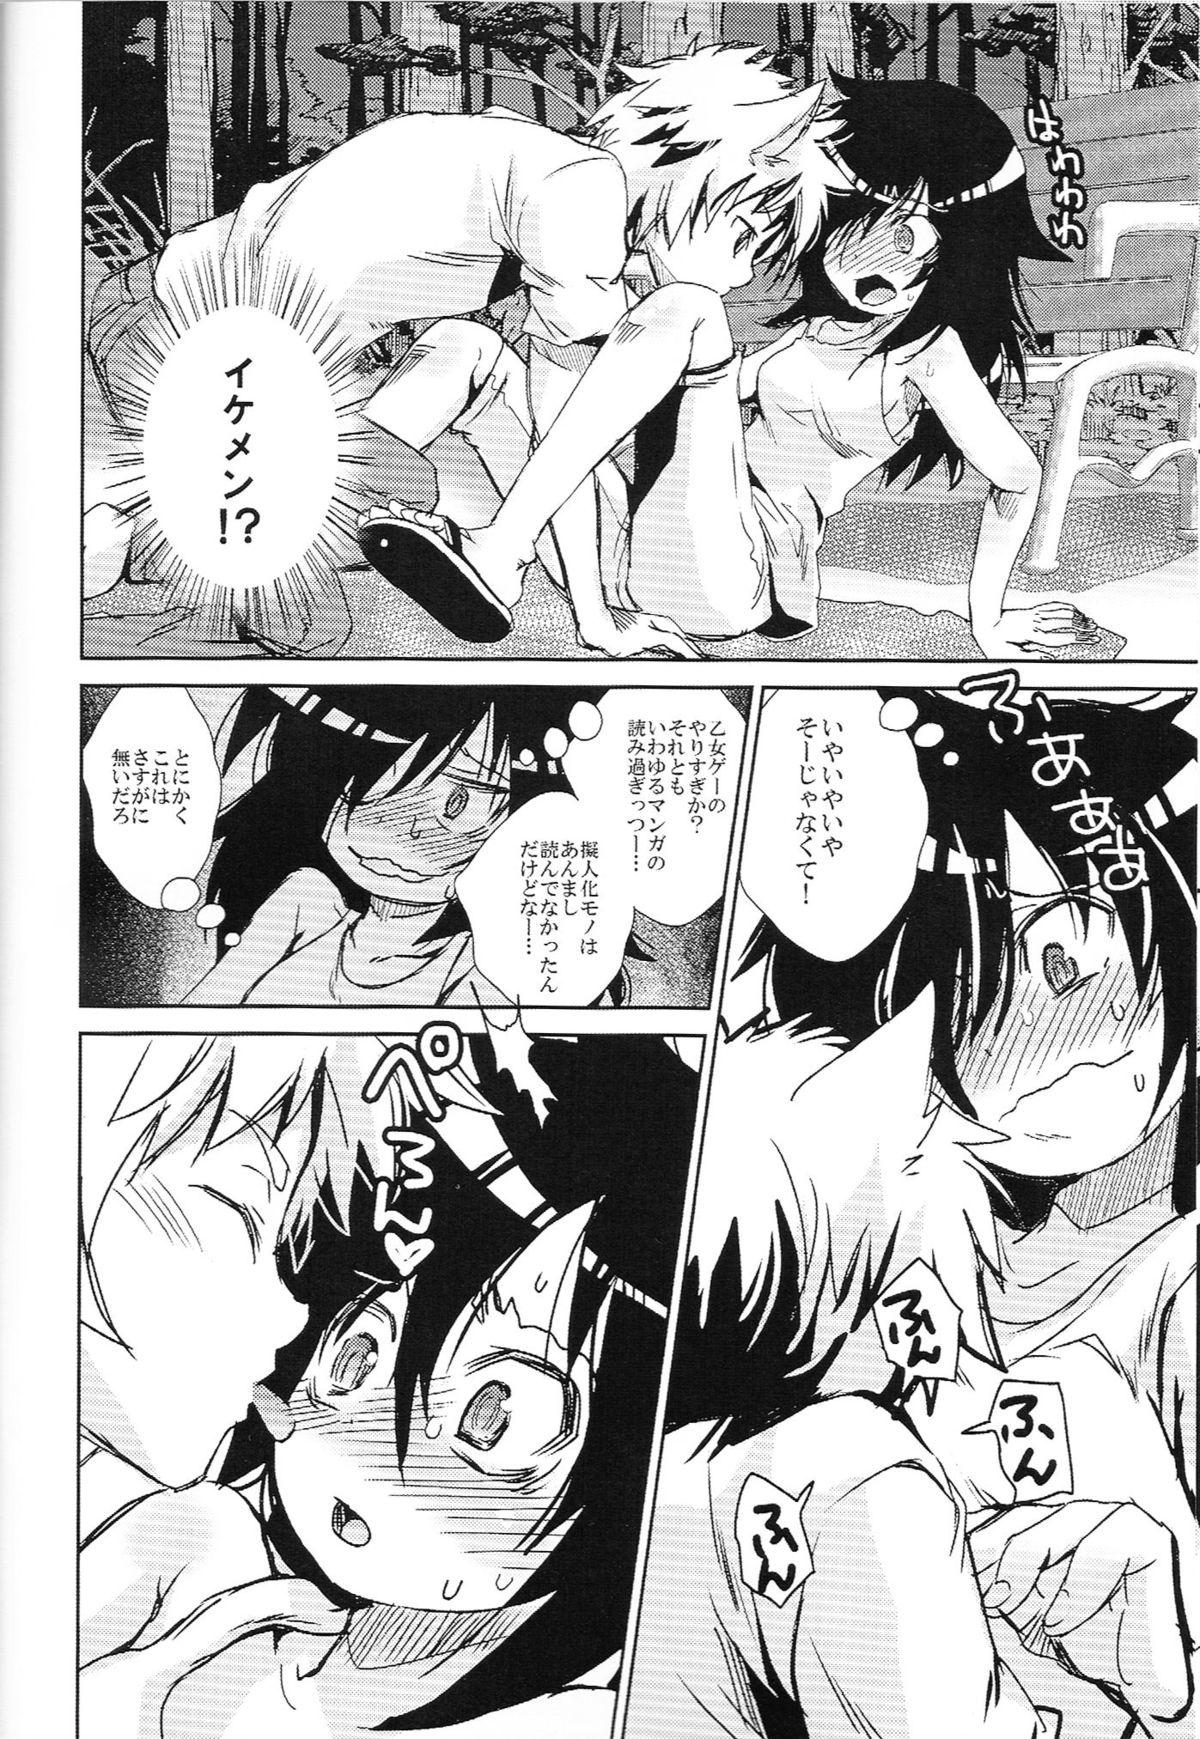 Raw Watashi ga Moteru noha Neko ni dake! - Its not my fault that im not popular Ballbusting - Page 5